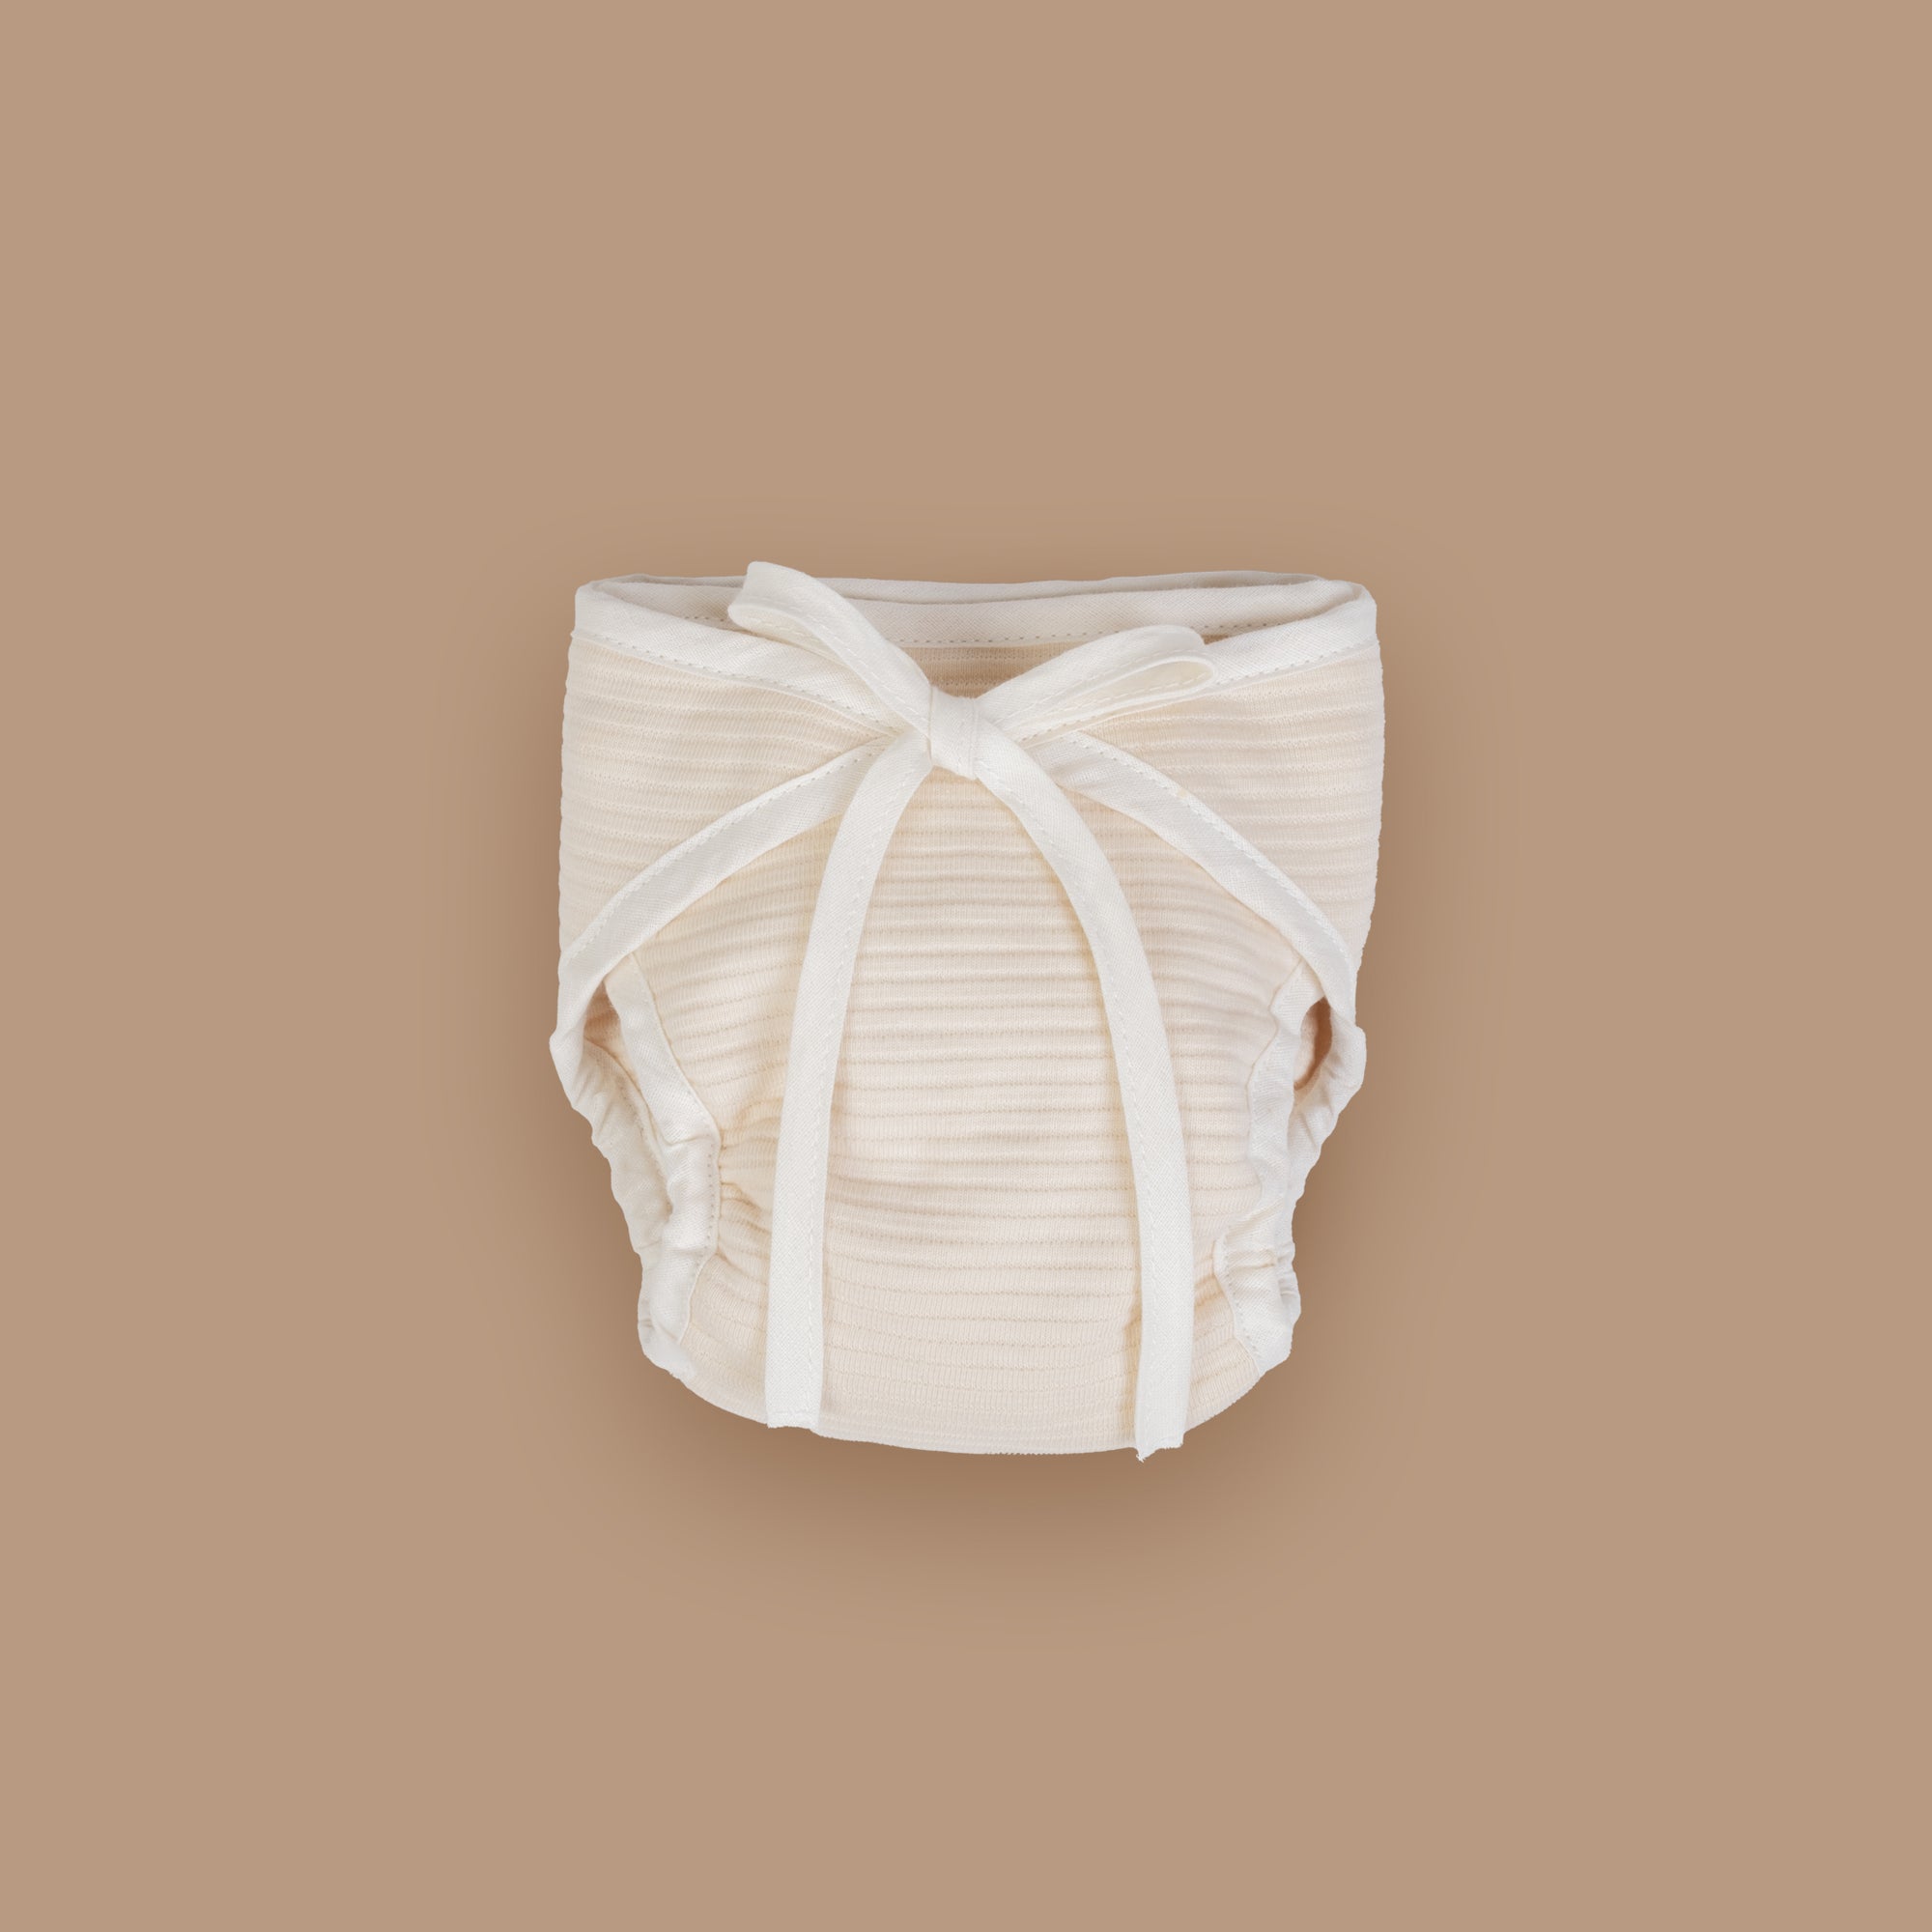 Sumo Cloth Diaper